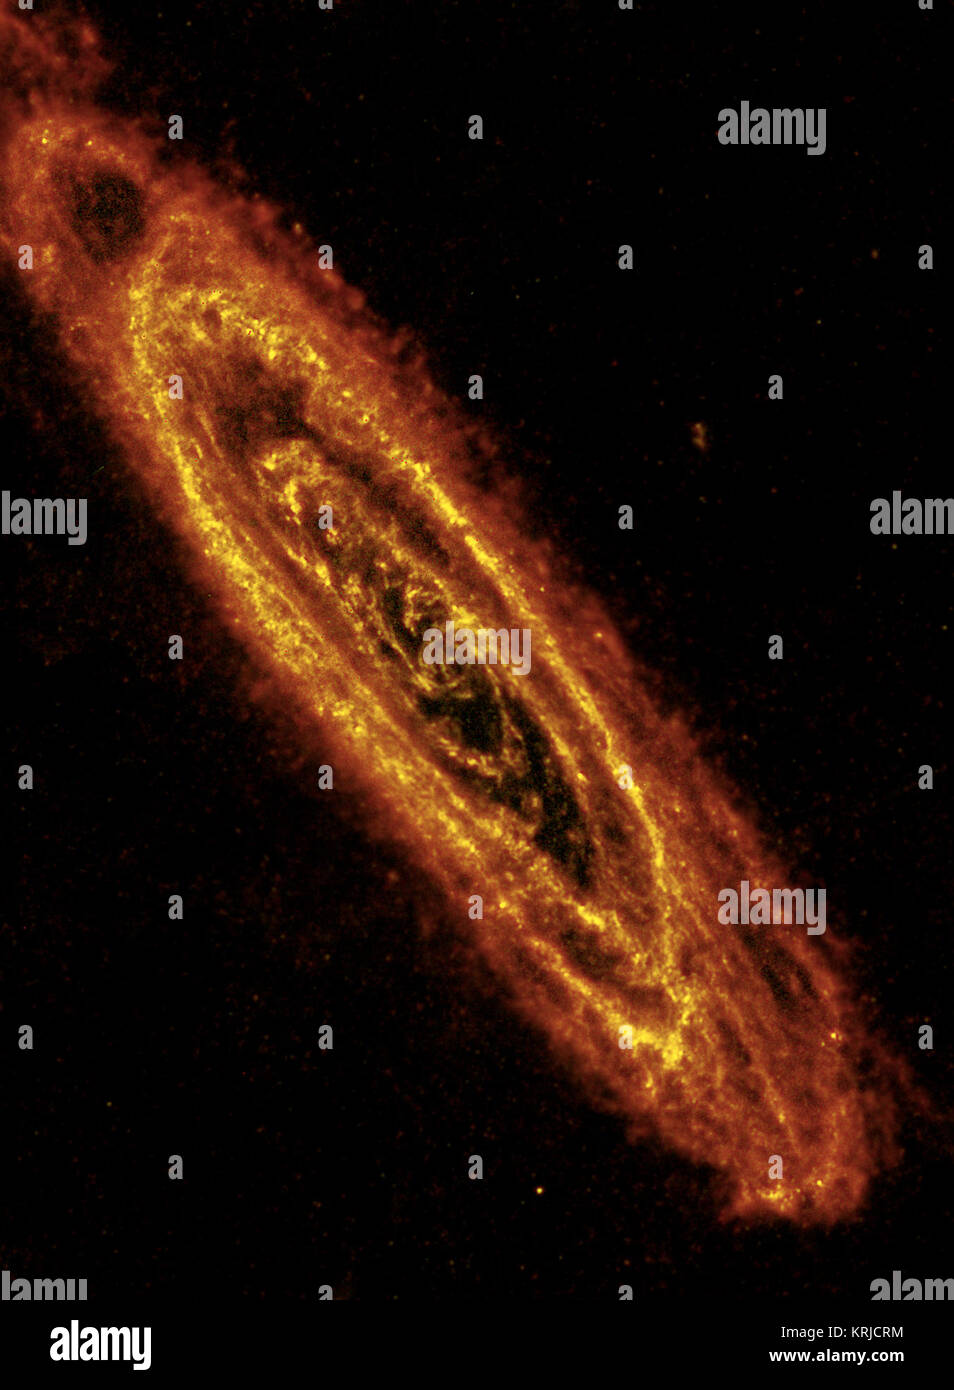 Dieses Bild der Andromeda Spiralgalaxie Highlights explosive Sterne in seinem Inneren, und Kühler, staubigen Sterne bilden in ihren vielen Ringen. Das Bild einer Beobachtung aus dem Herschel Space Observatory im infraroten Licht genommen. NASA spielt eine Rolle in diesen beiden ESA-Missionen. Herschel bietet einen detaillierten Blick auf die kühle Wolken von Star Geburt, dass fünf konzentrische Ringe in der Galaxie. Massive junge Sterne sind Heizdecken von Staub, die sie umgeben, wodurch Sie glühen in der längeren Wellenlänge Infrarotlicht, bekannt als far-infrared, dass Herschel sieht. Andromeda ich Stockfoto